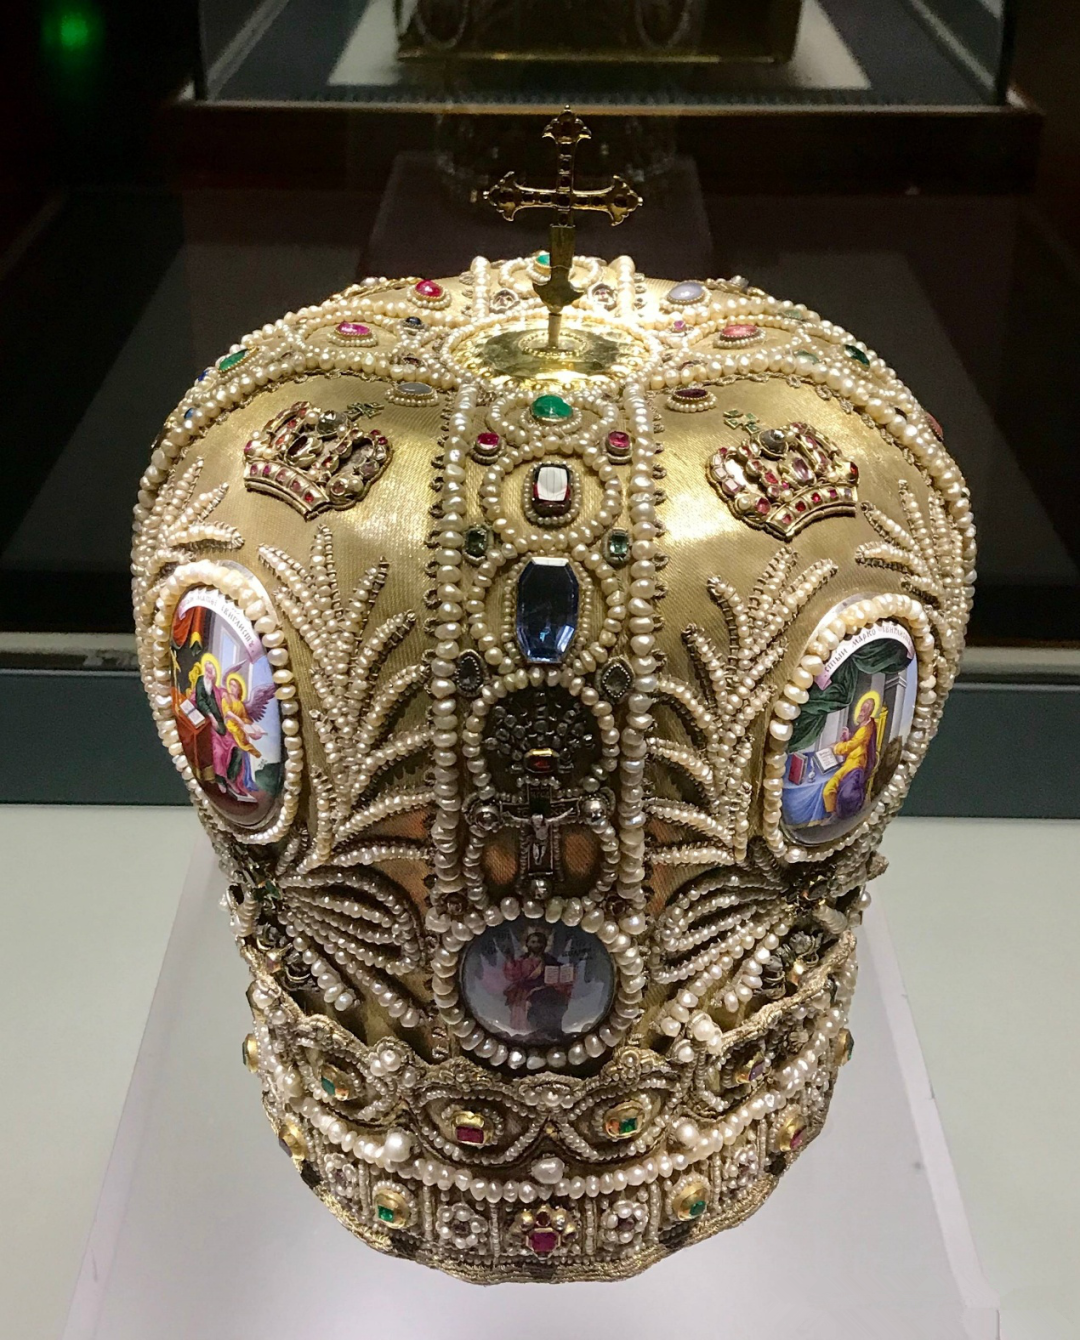 俄罗斯的皇冠大不同, 一赏俄式珠宝的别样风采